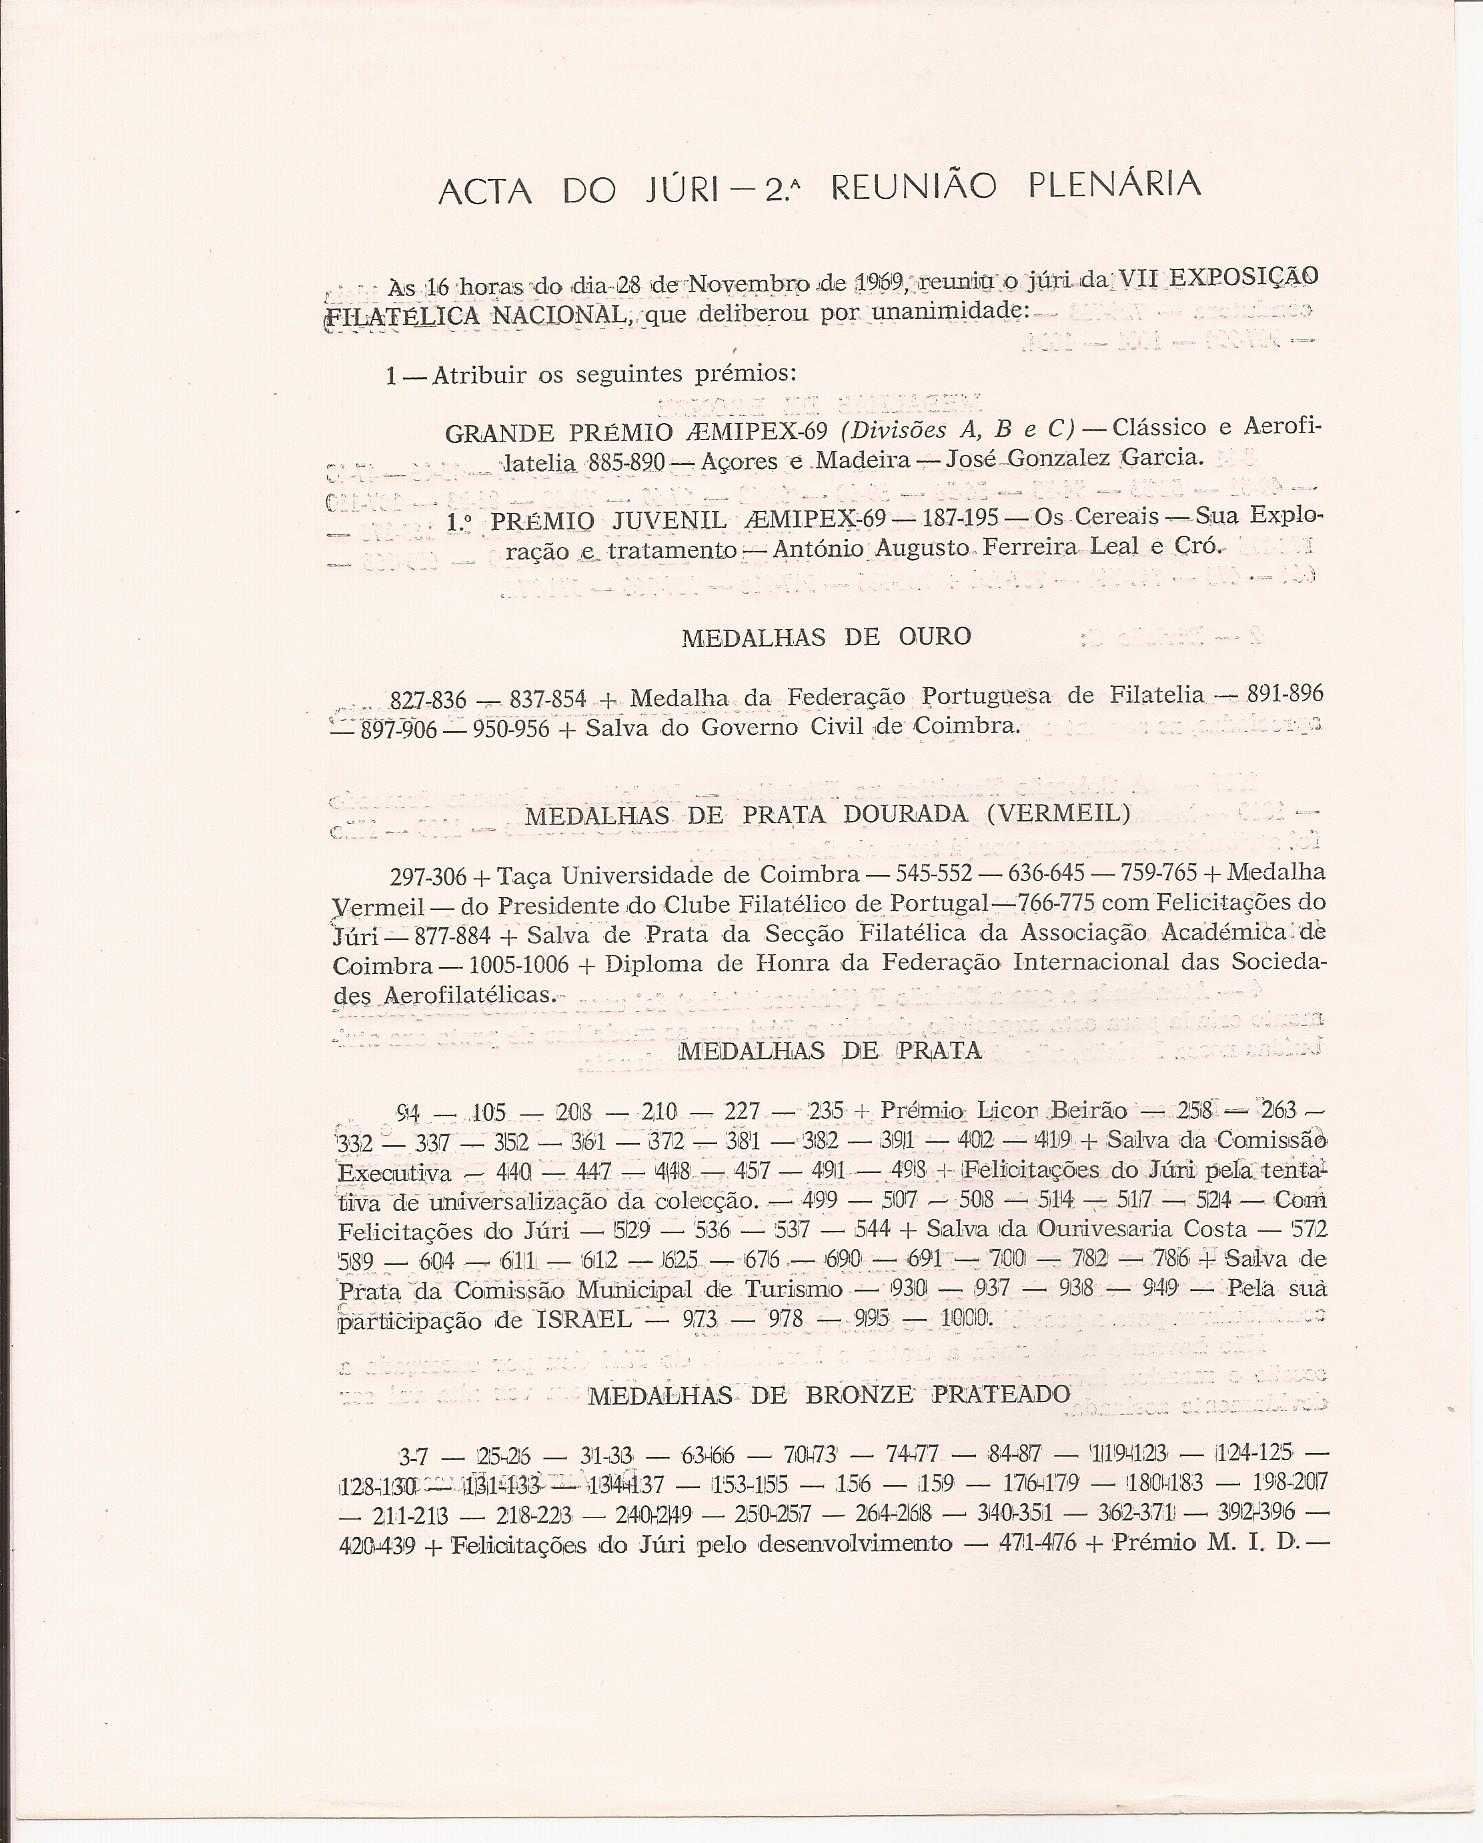 Catalogo da VII Exposição Filatélica - Coimbra 1969